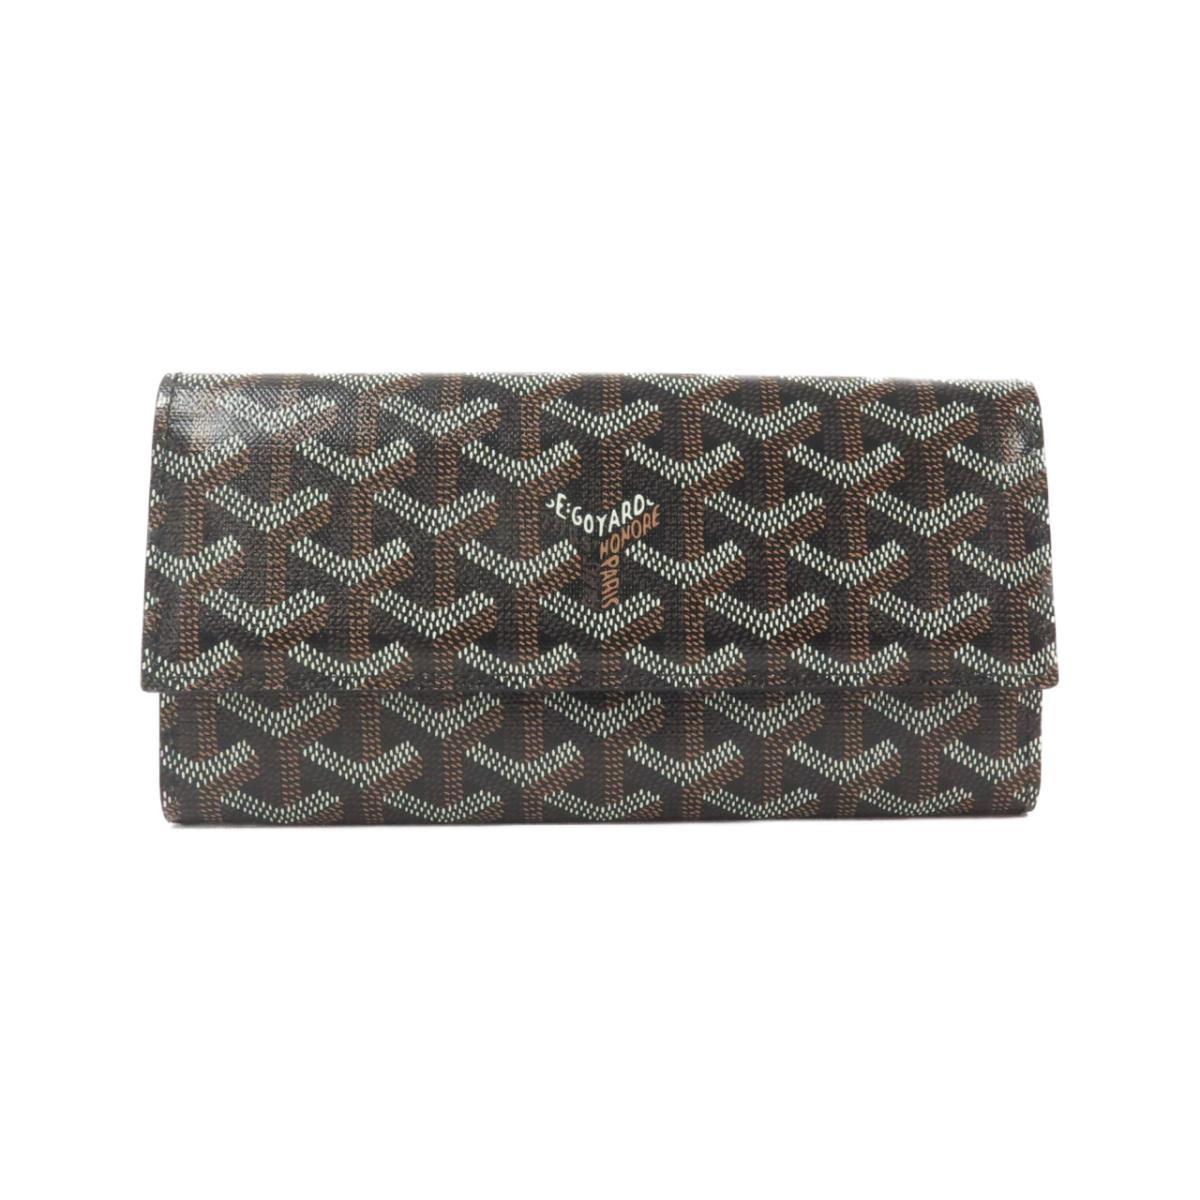 fake goyard wallet for sale